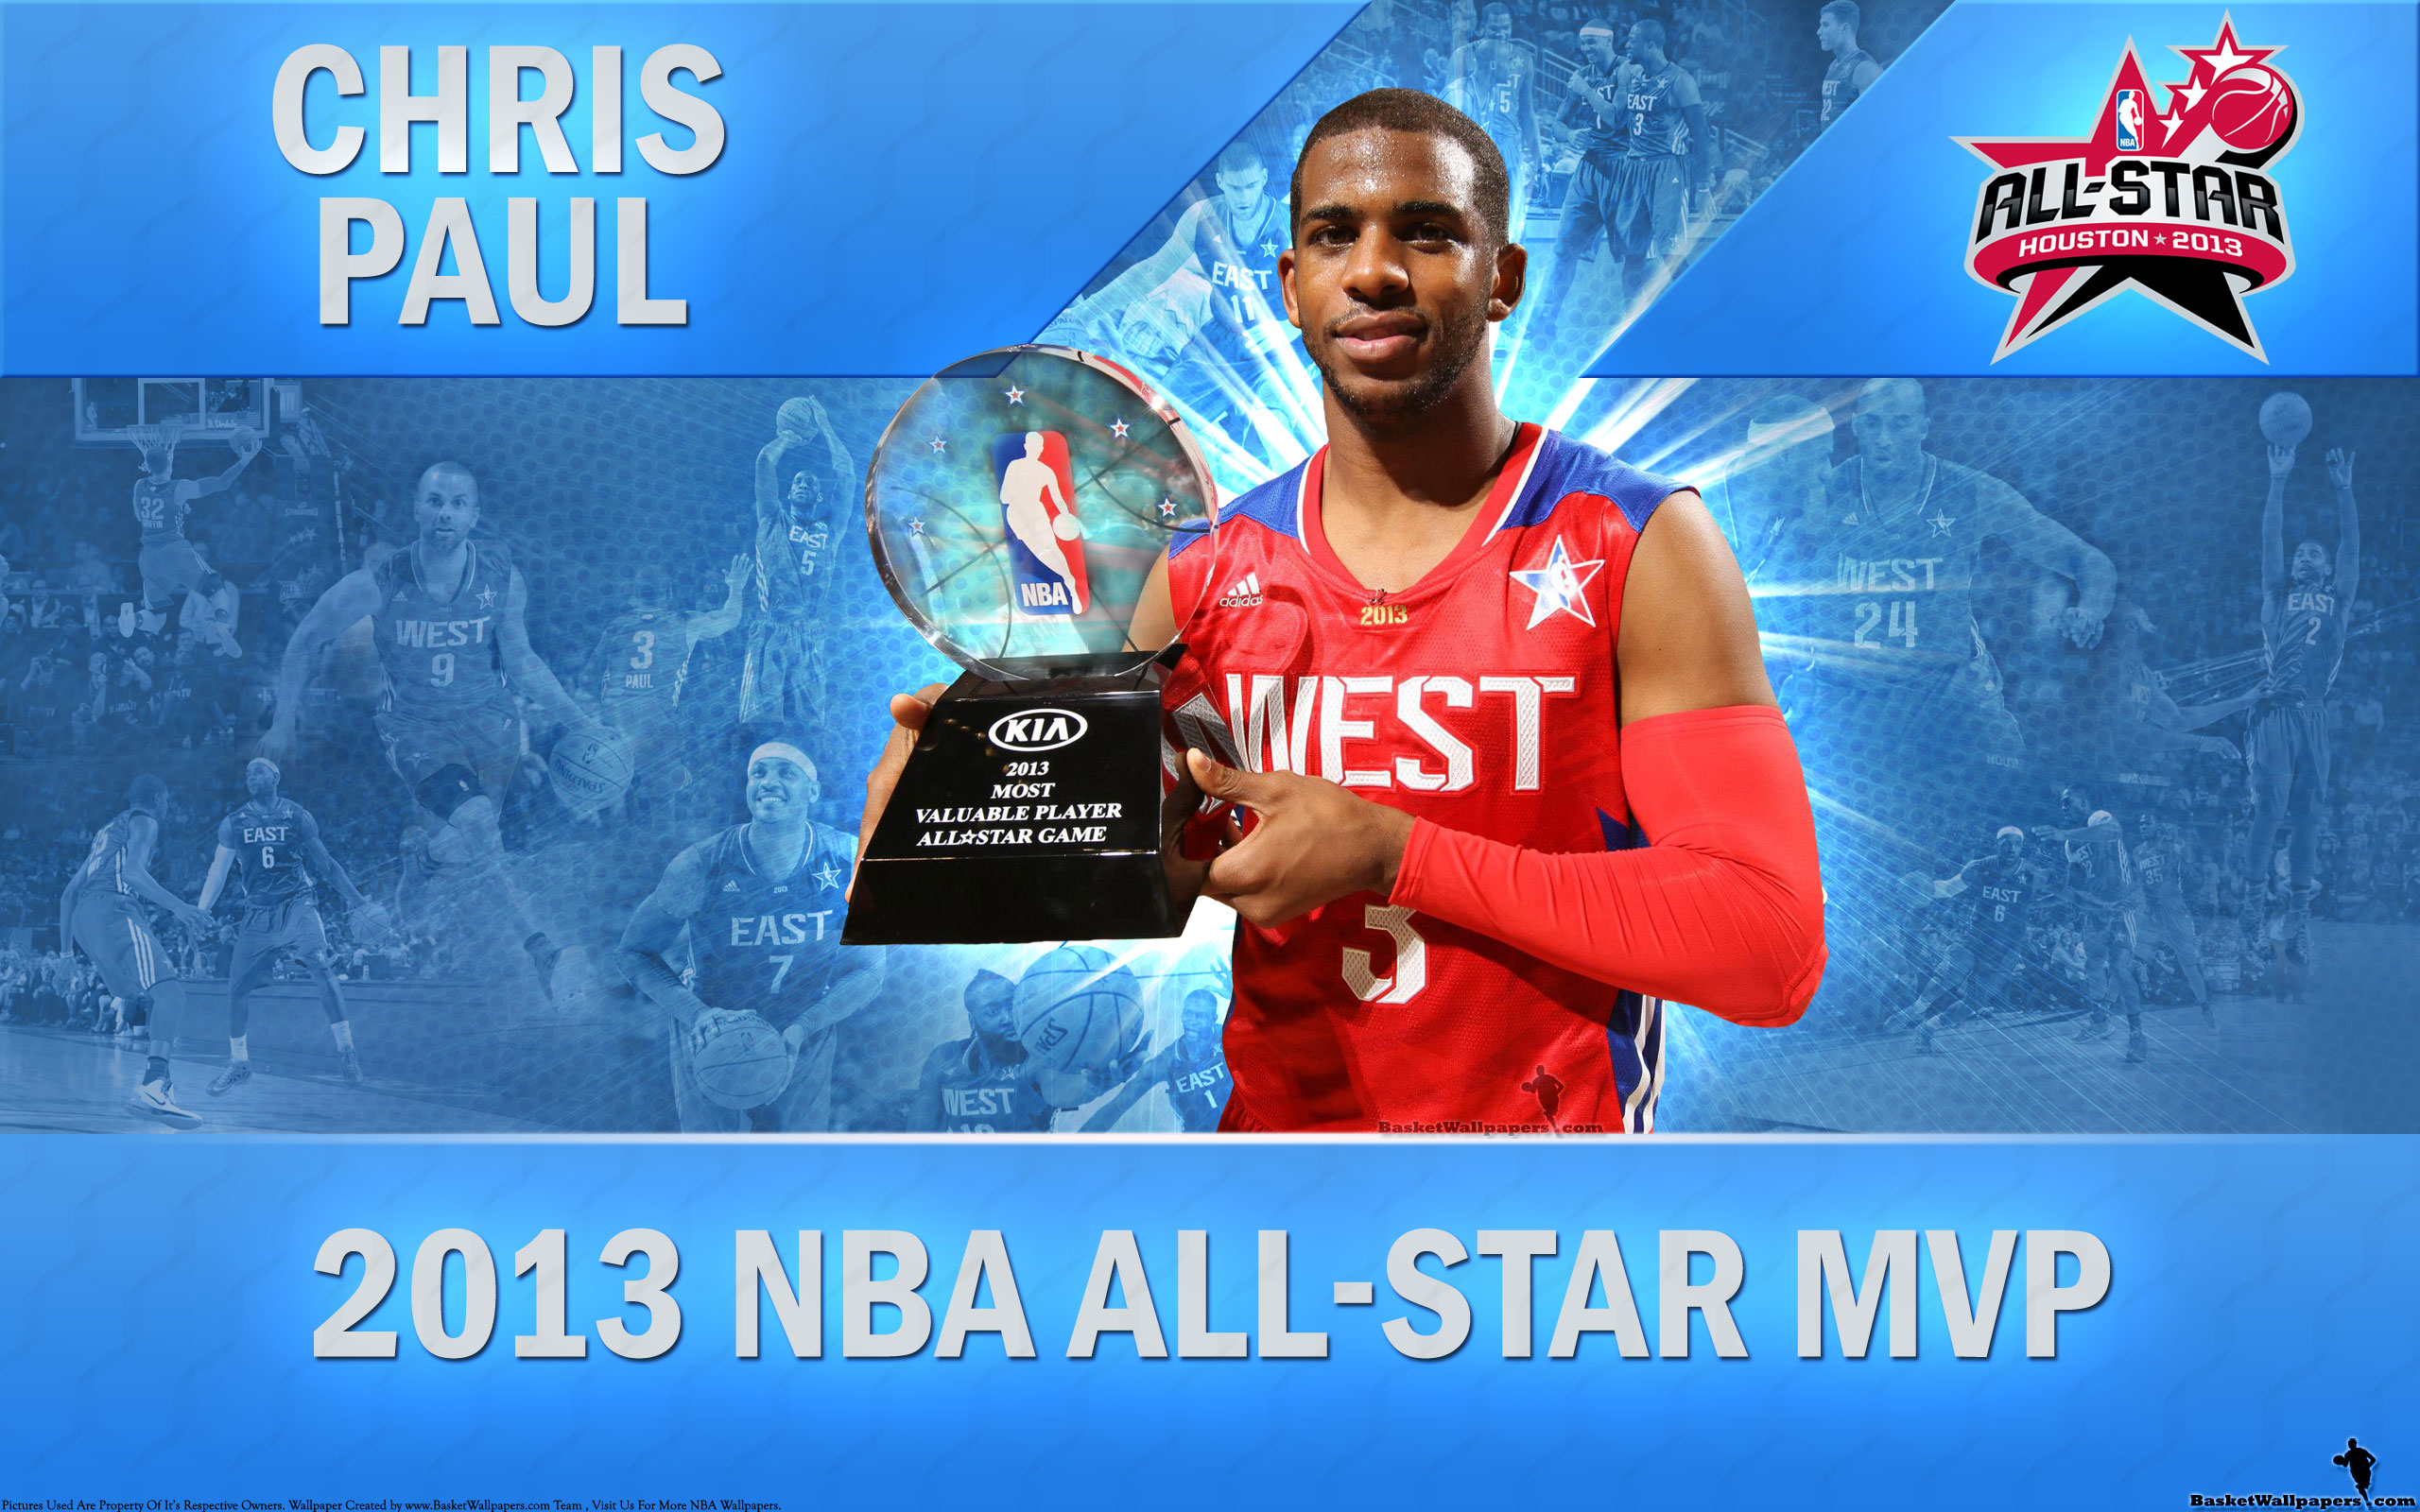 Chris Paul Wallpaper Winning His First All Star Mvp Award Nba